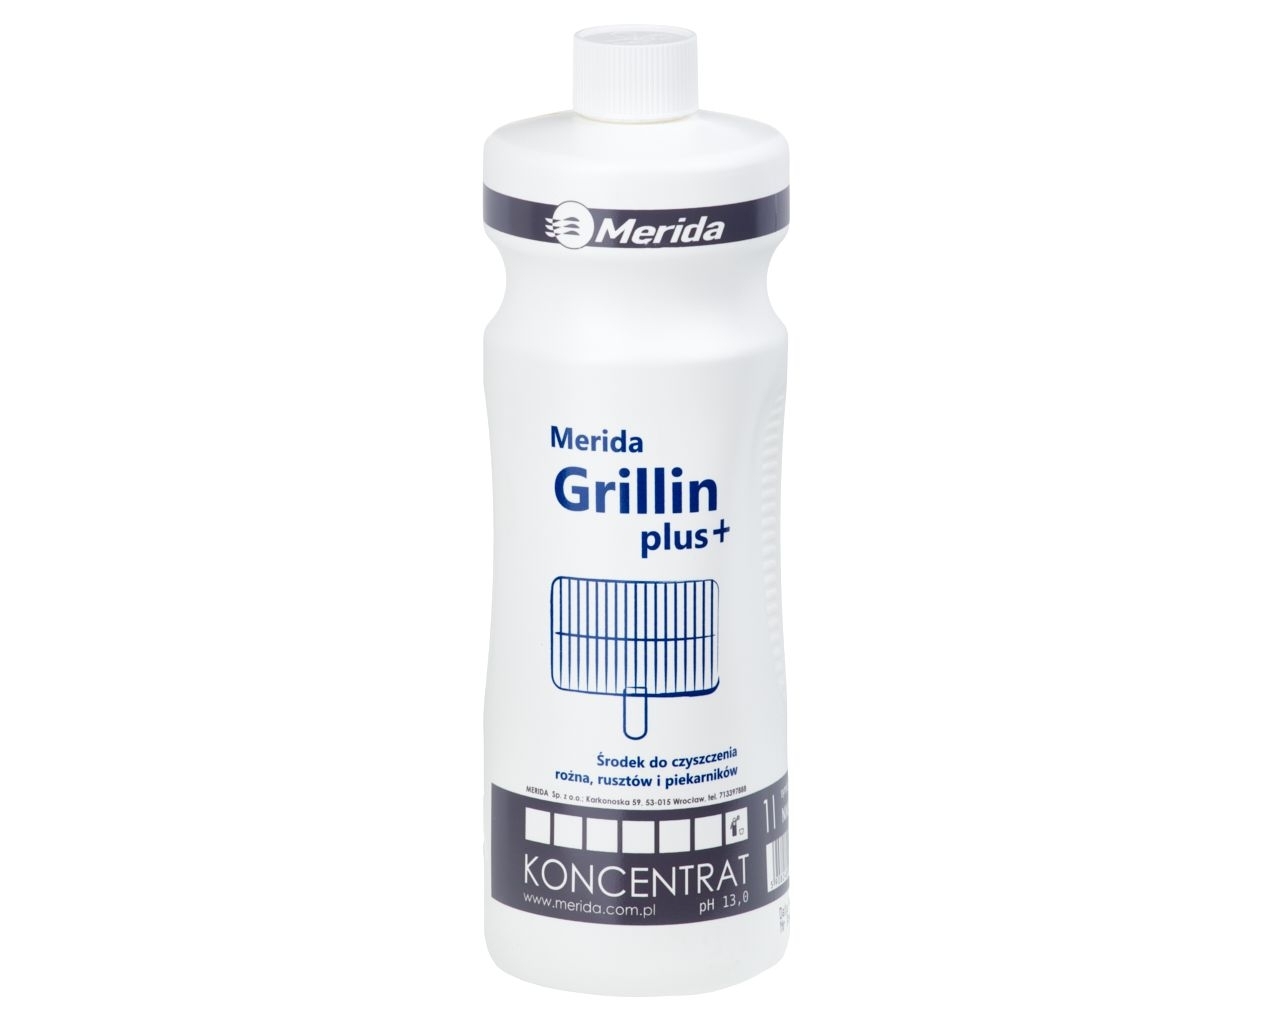 MERIDA GRILLIN PLUS+ Środek do czyszczenia rusztów, piekarników itp., butelka 1 l